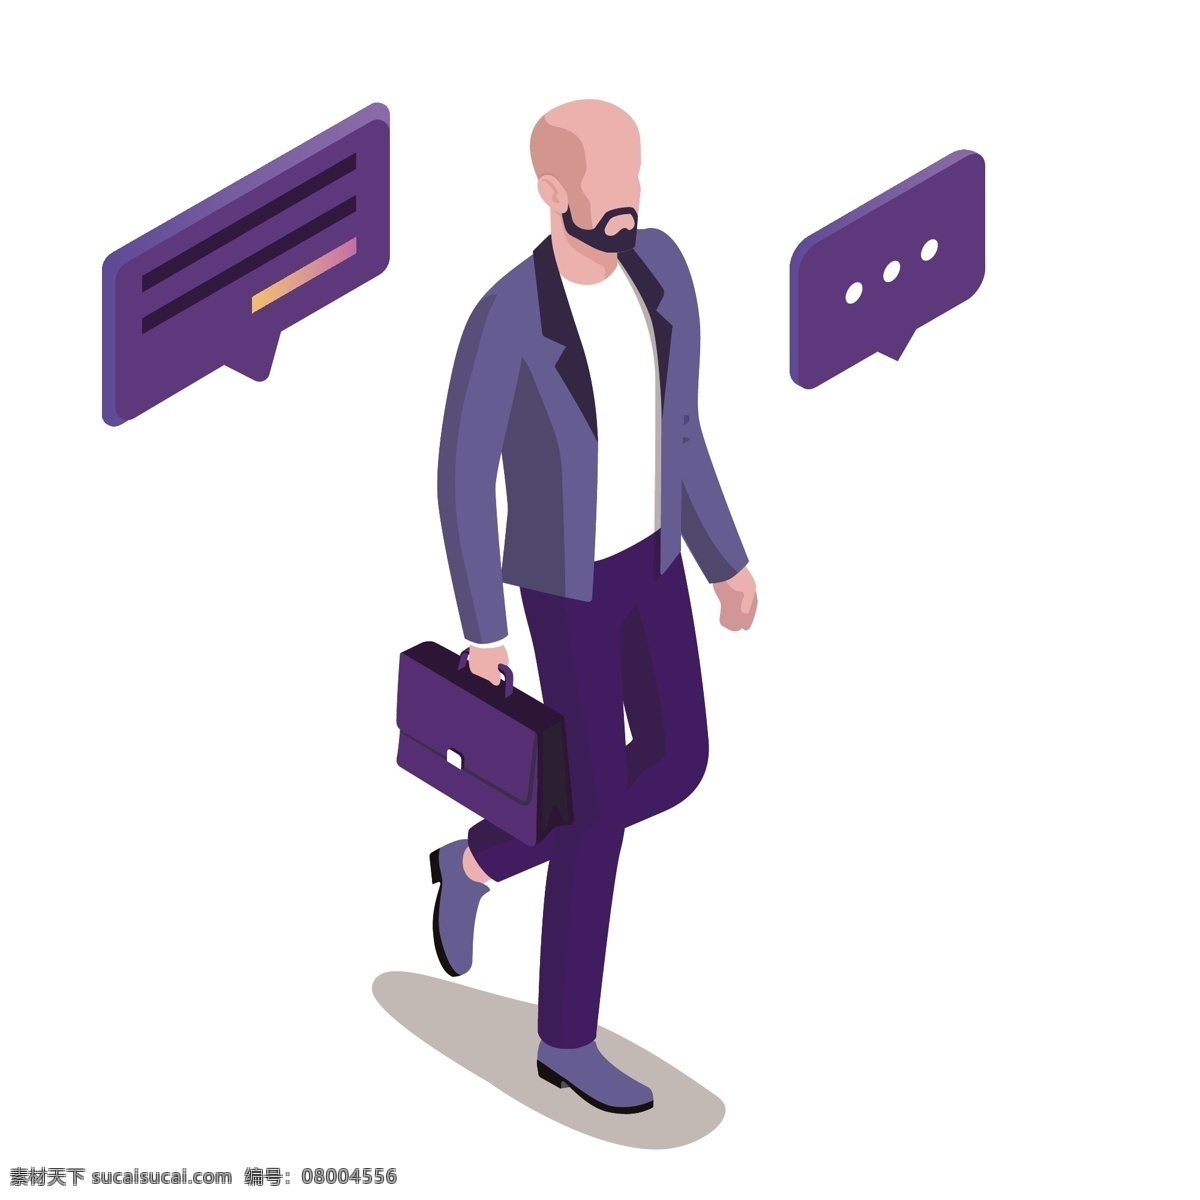 紫色 商务 男子 插画 卡通 彩色 小清新 创意 矢量 科技 办公 元素 现代 简约 装饰 图案